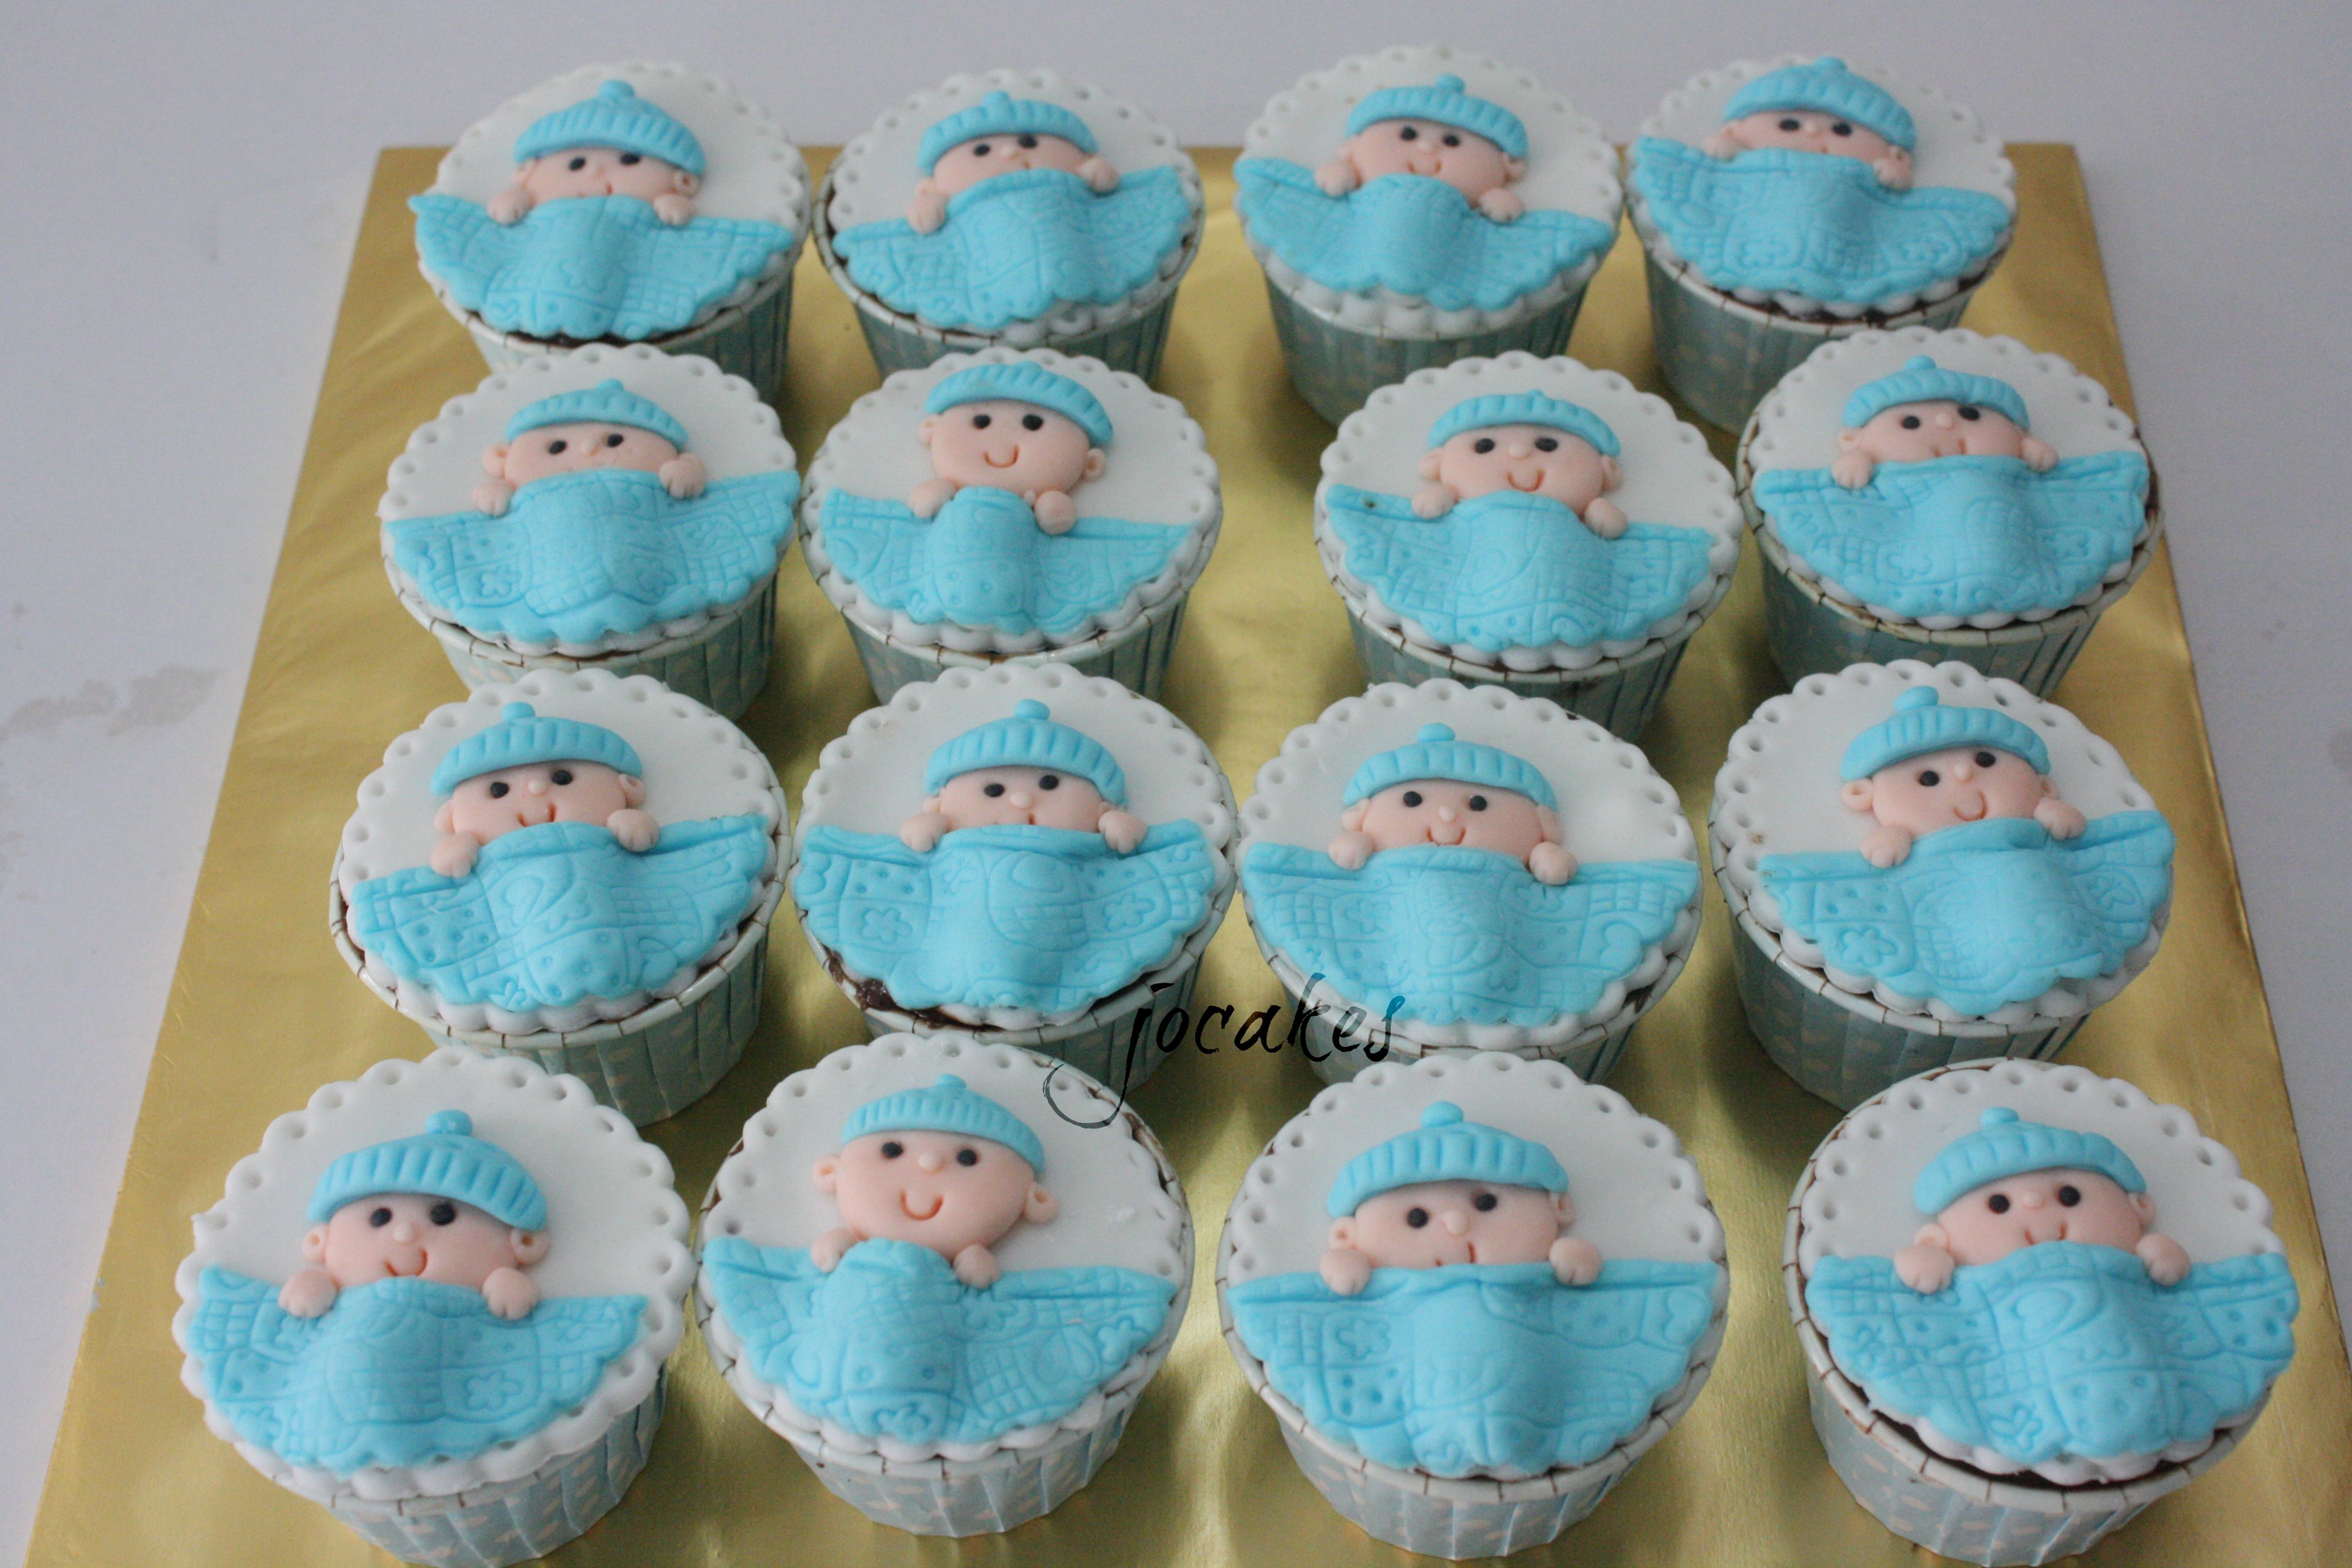 newborn baby cupcakes